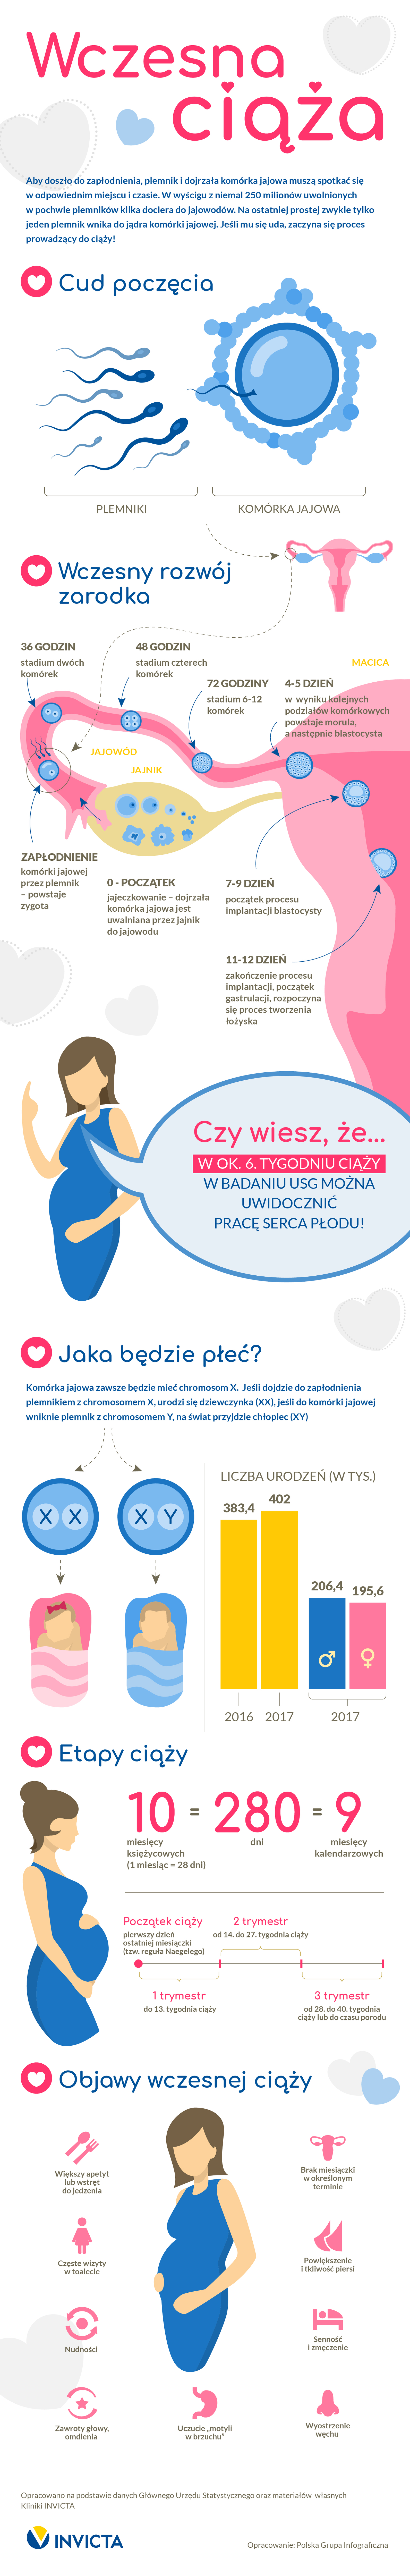 Wczesna ciąża w Polsce